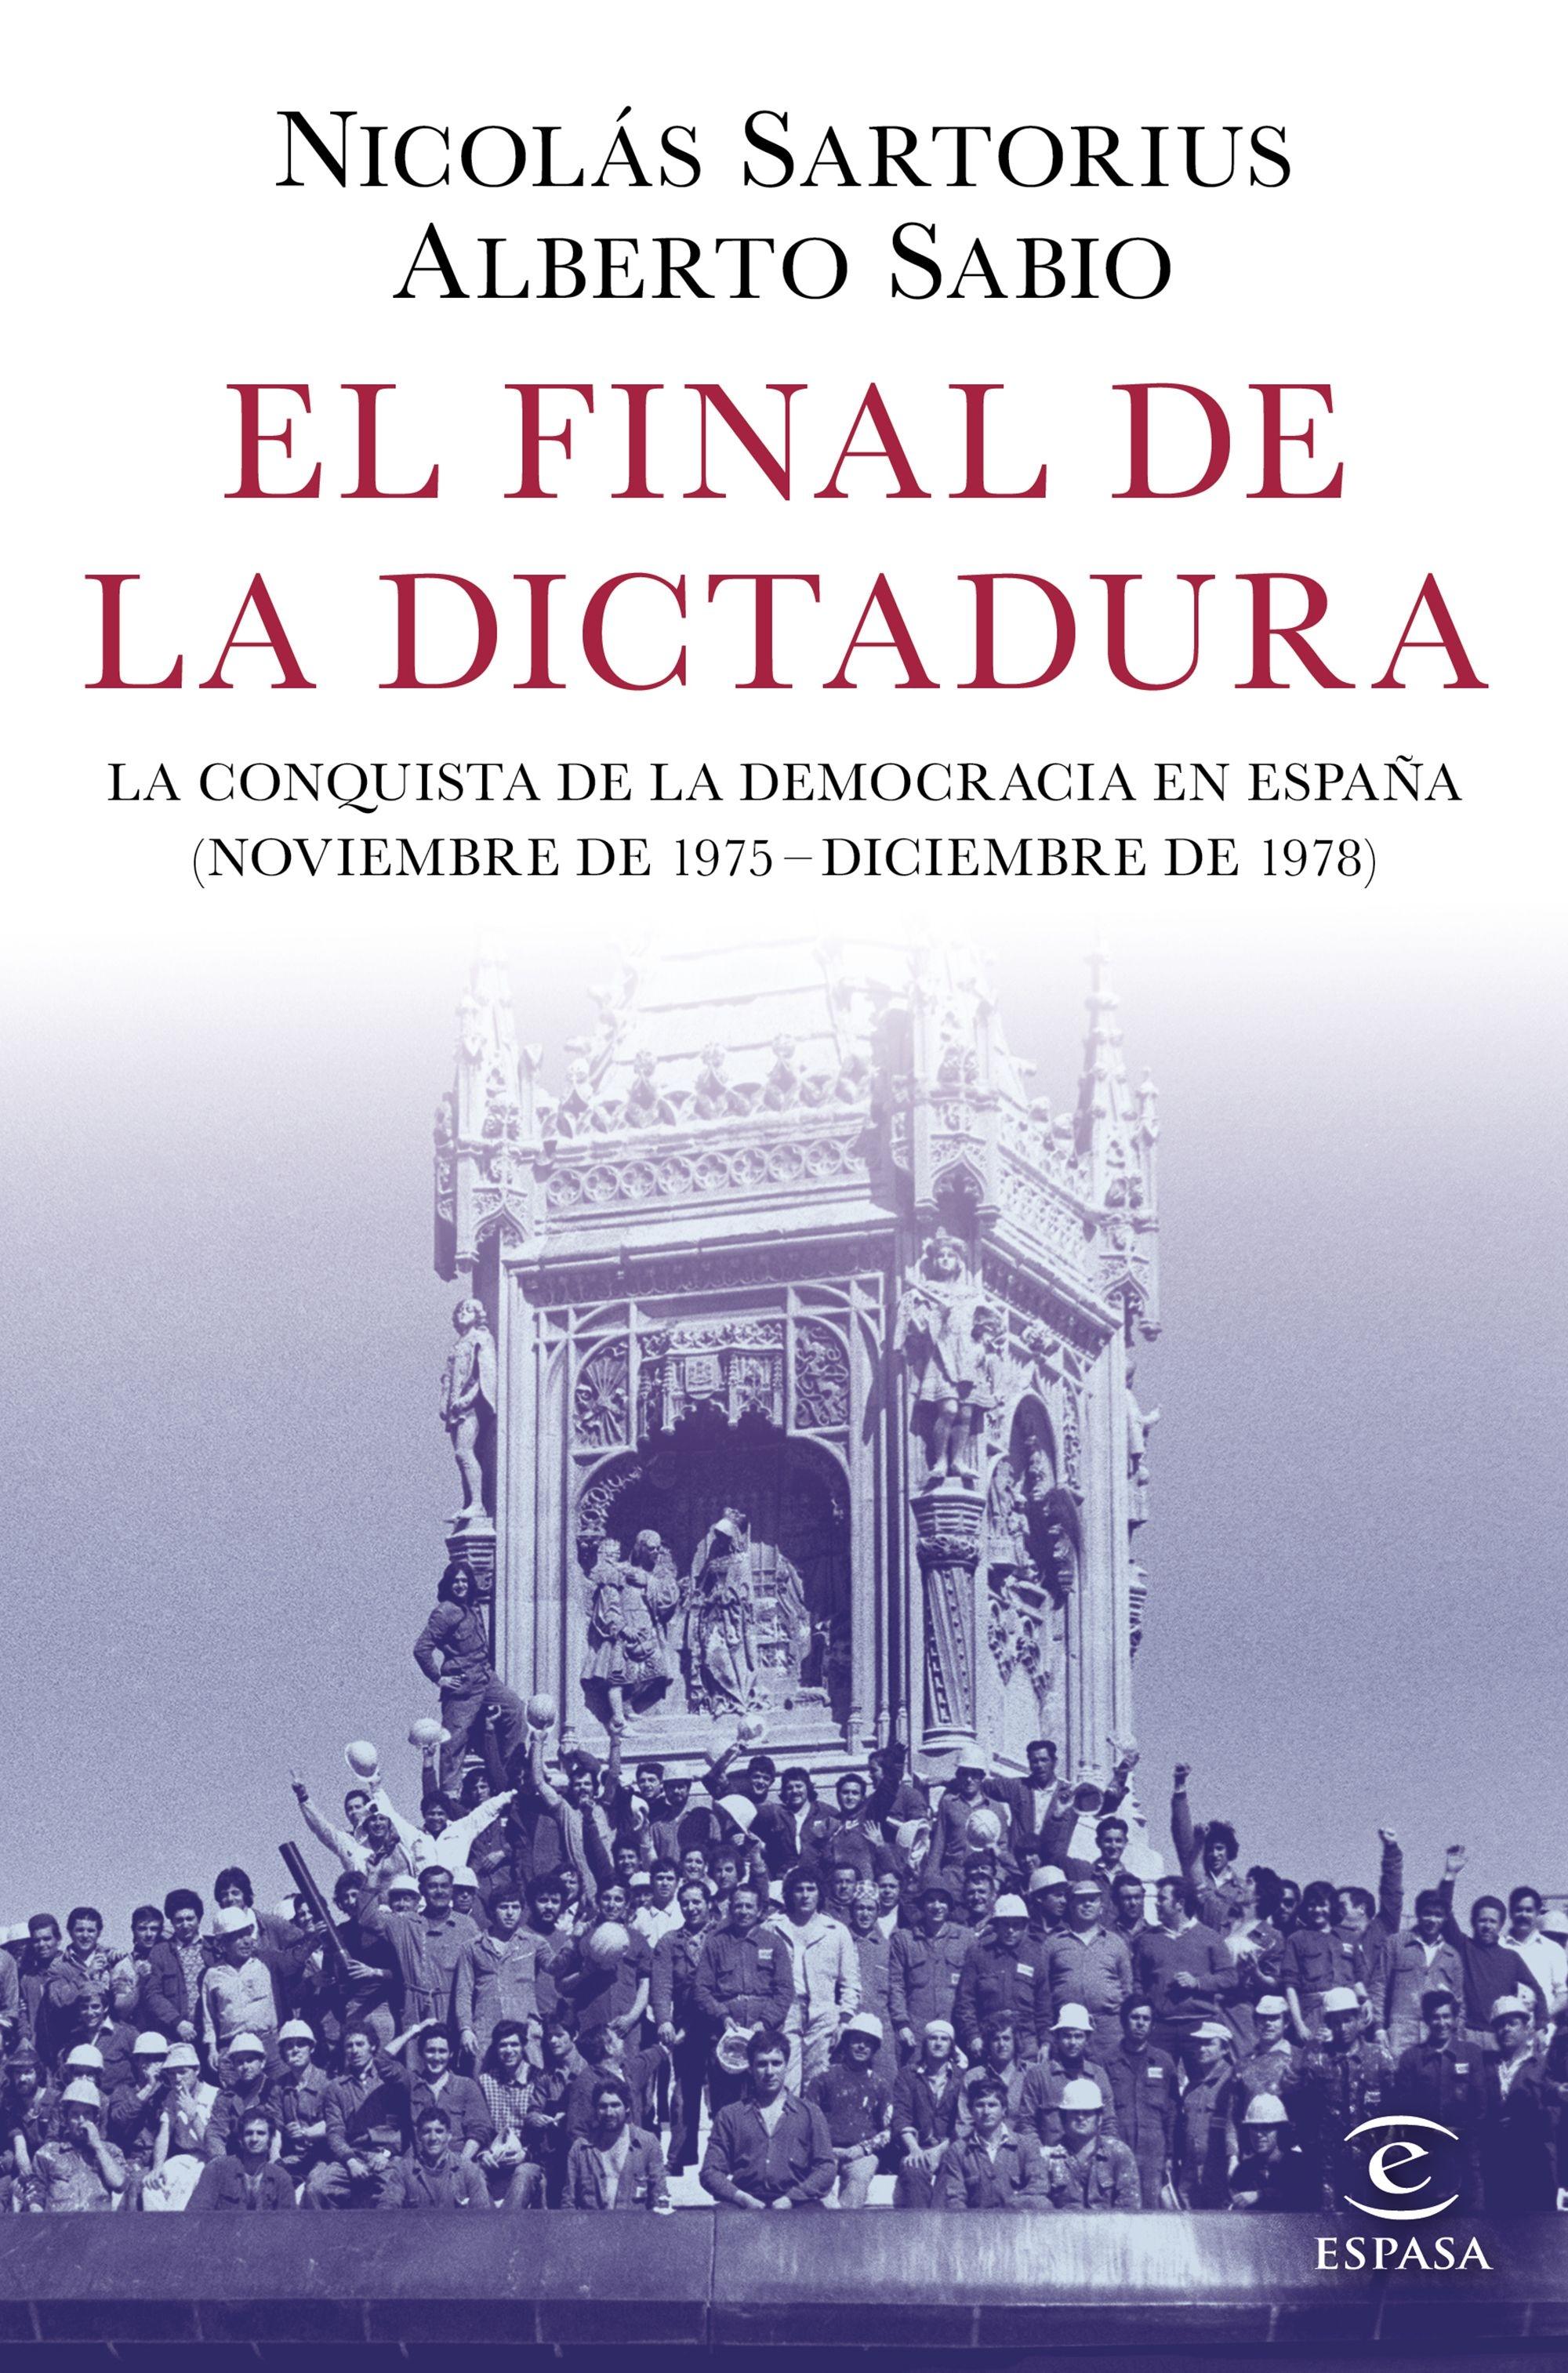 El final de la dictadura "La conquista de la democracia en España (Noviembre de 1975 - Diciembre d". 